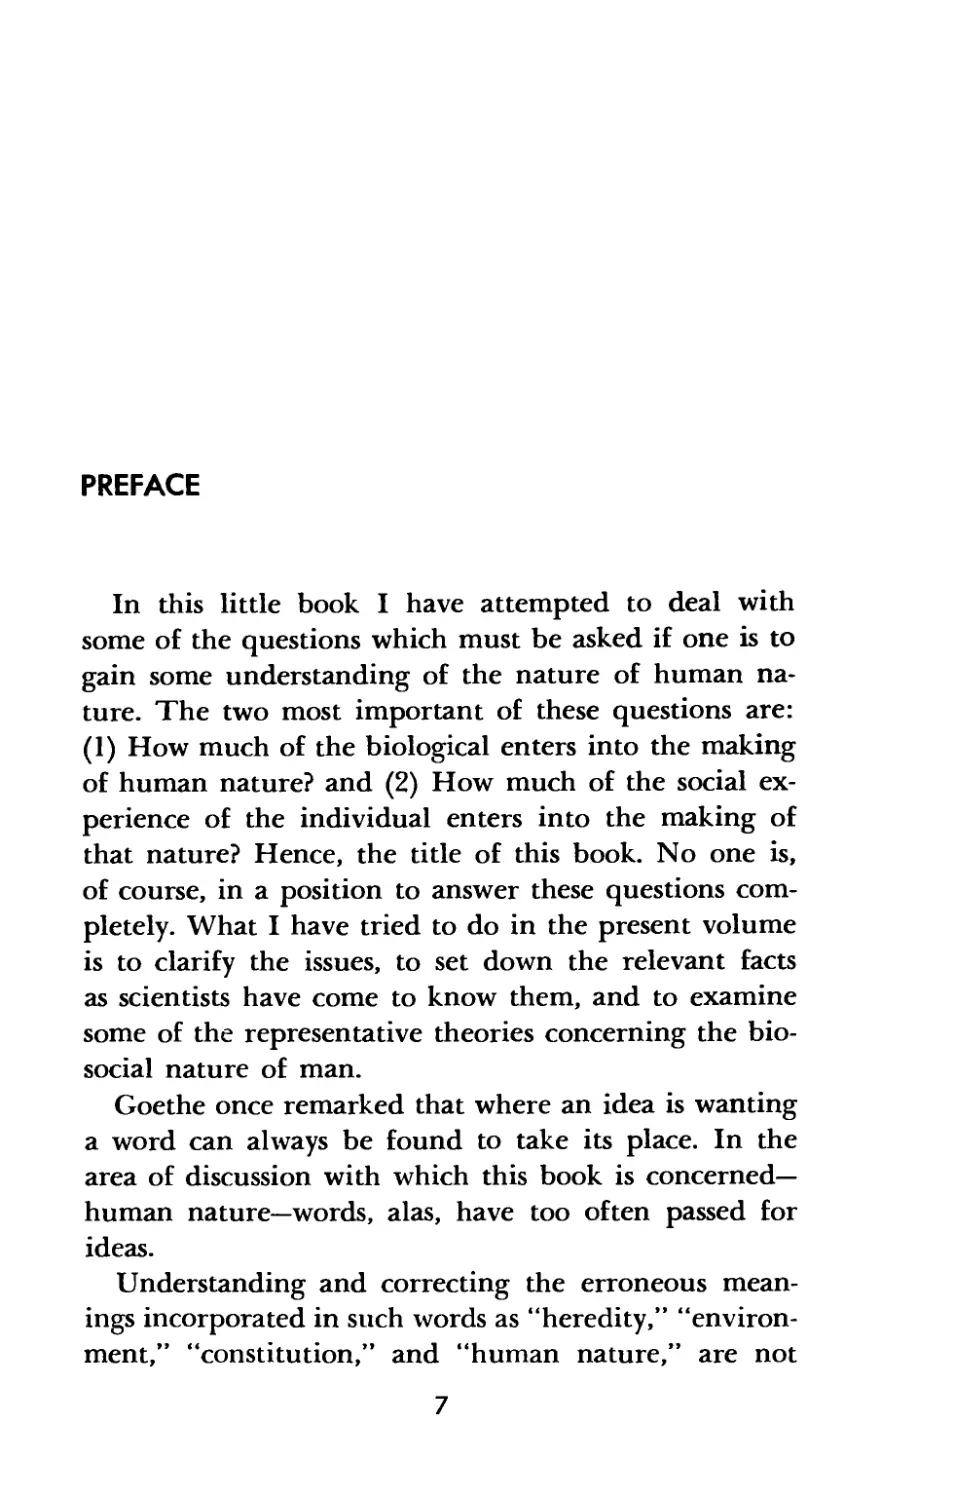 Preface